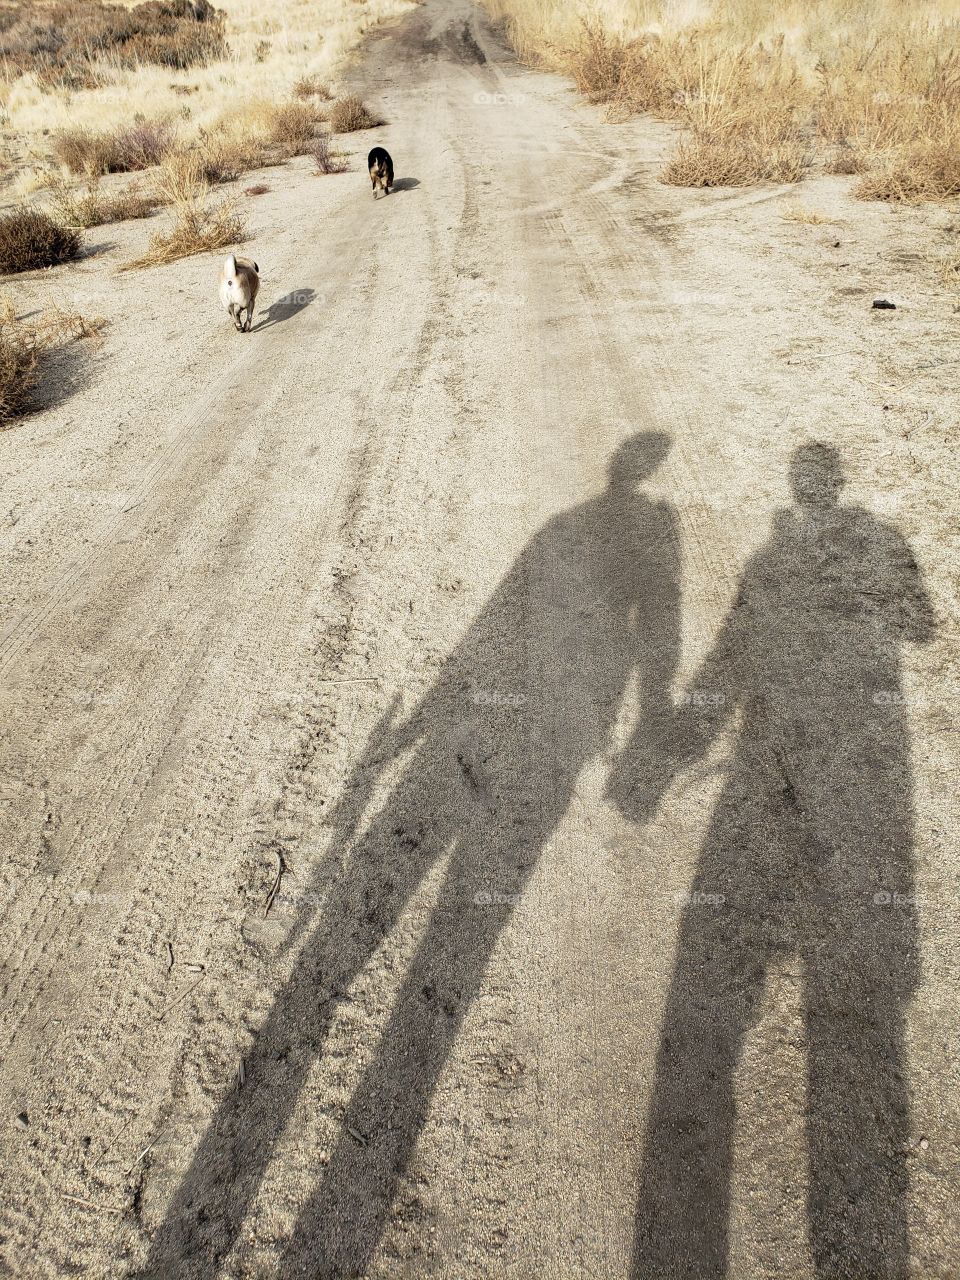 Boyfriends walking the dogs (subject in shadow)